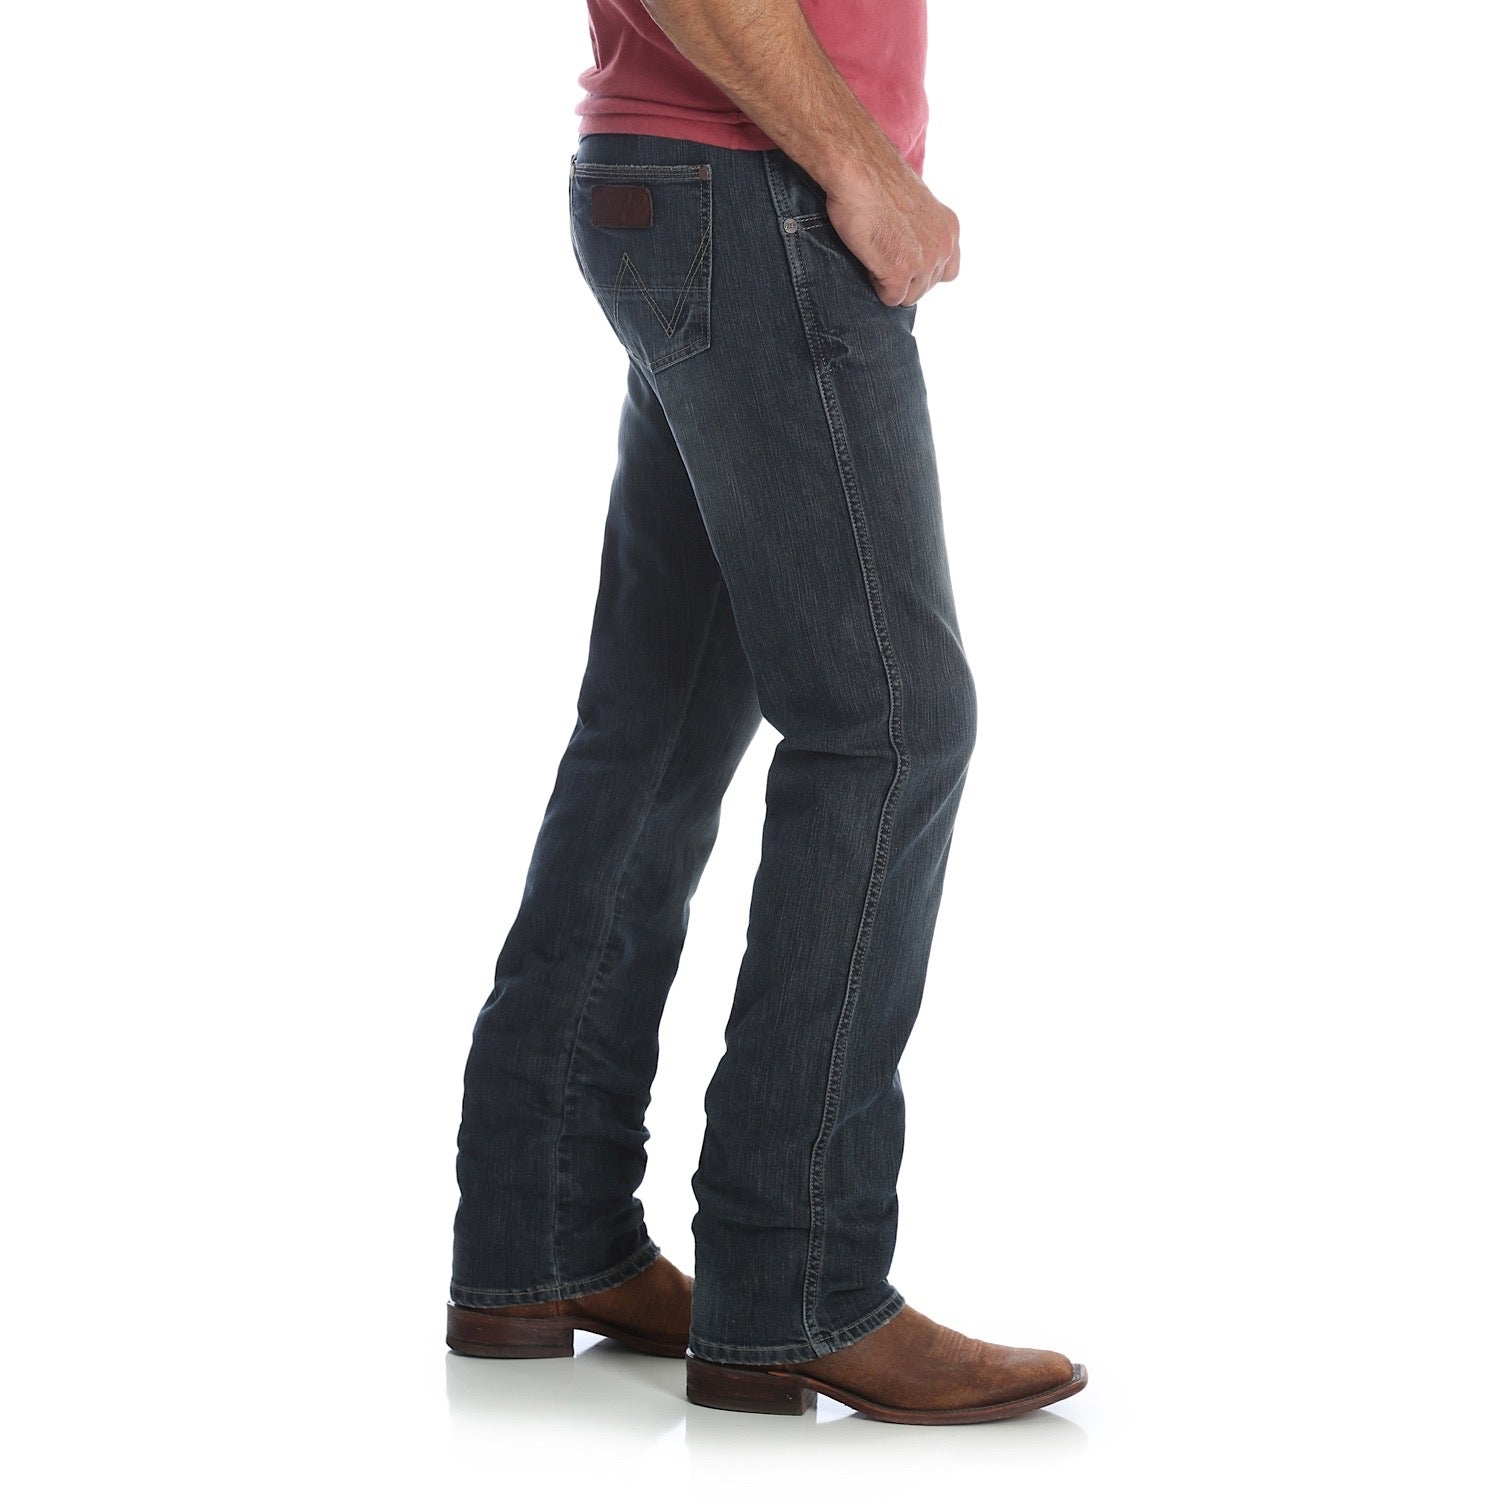 Buy Wrangler Mens Retro Slim Straight Jean 34